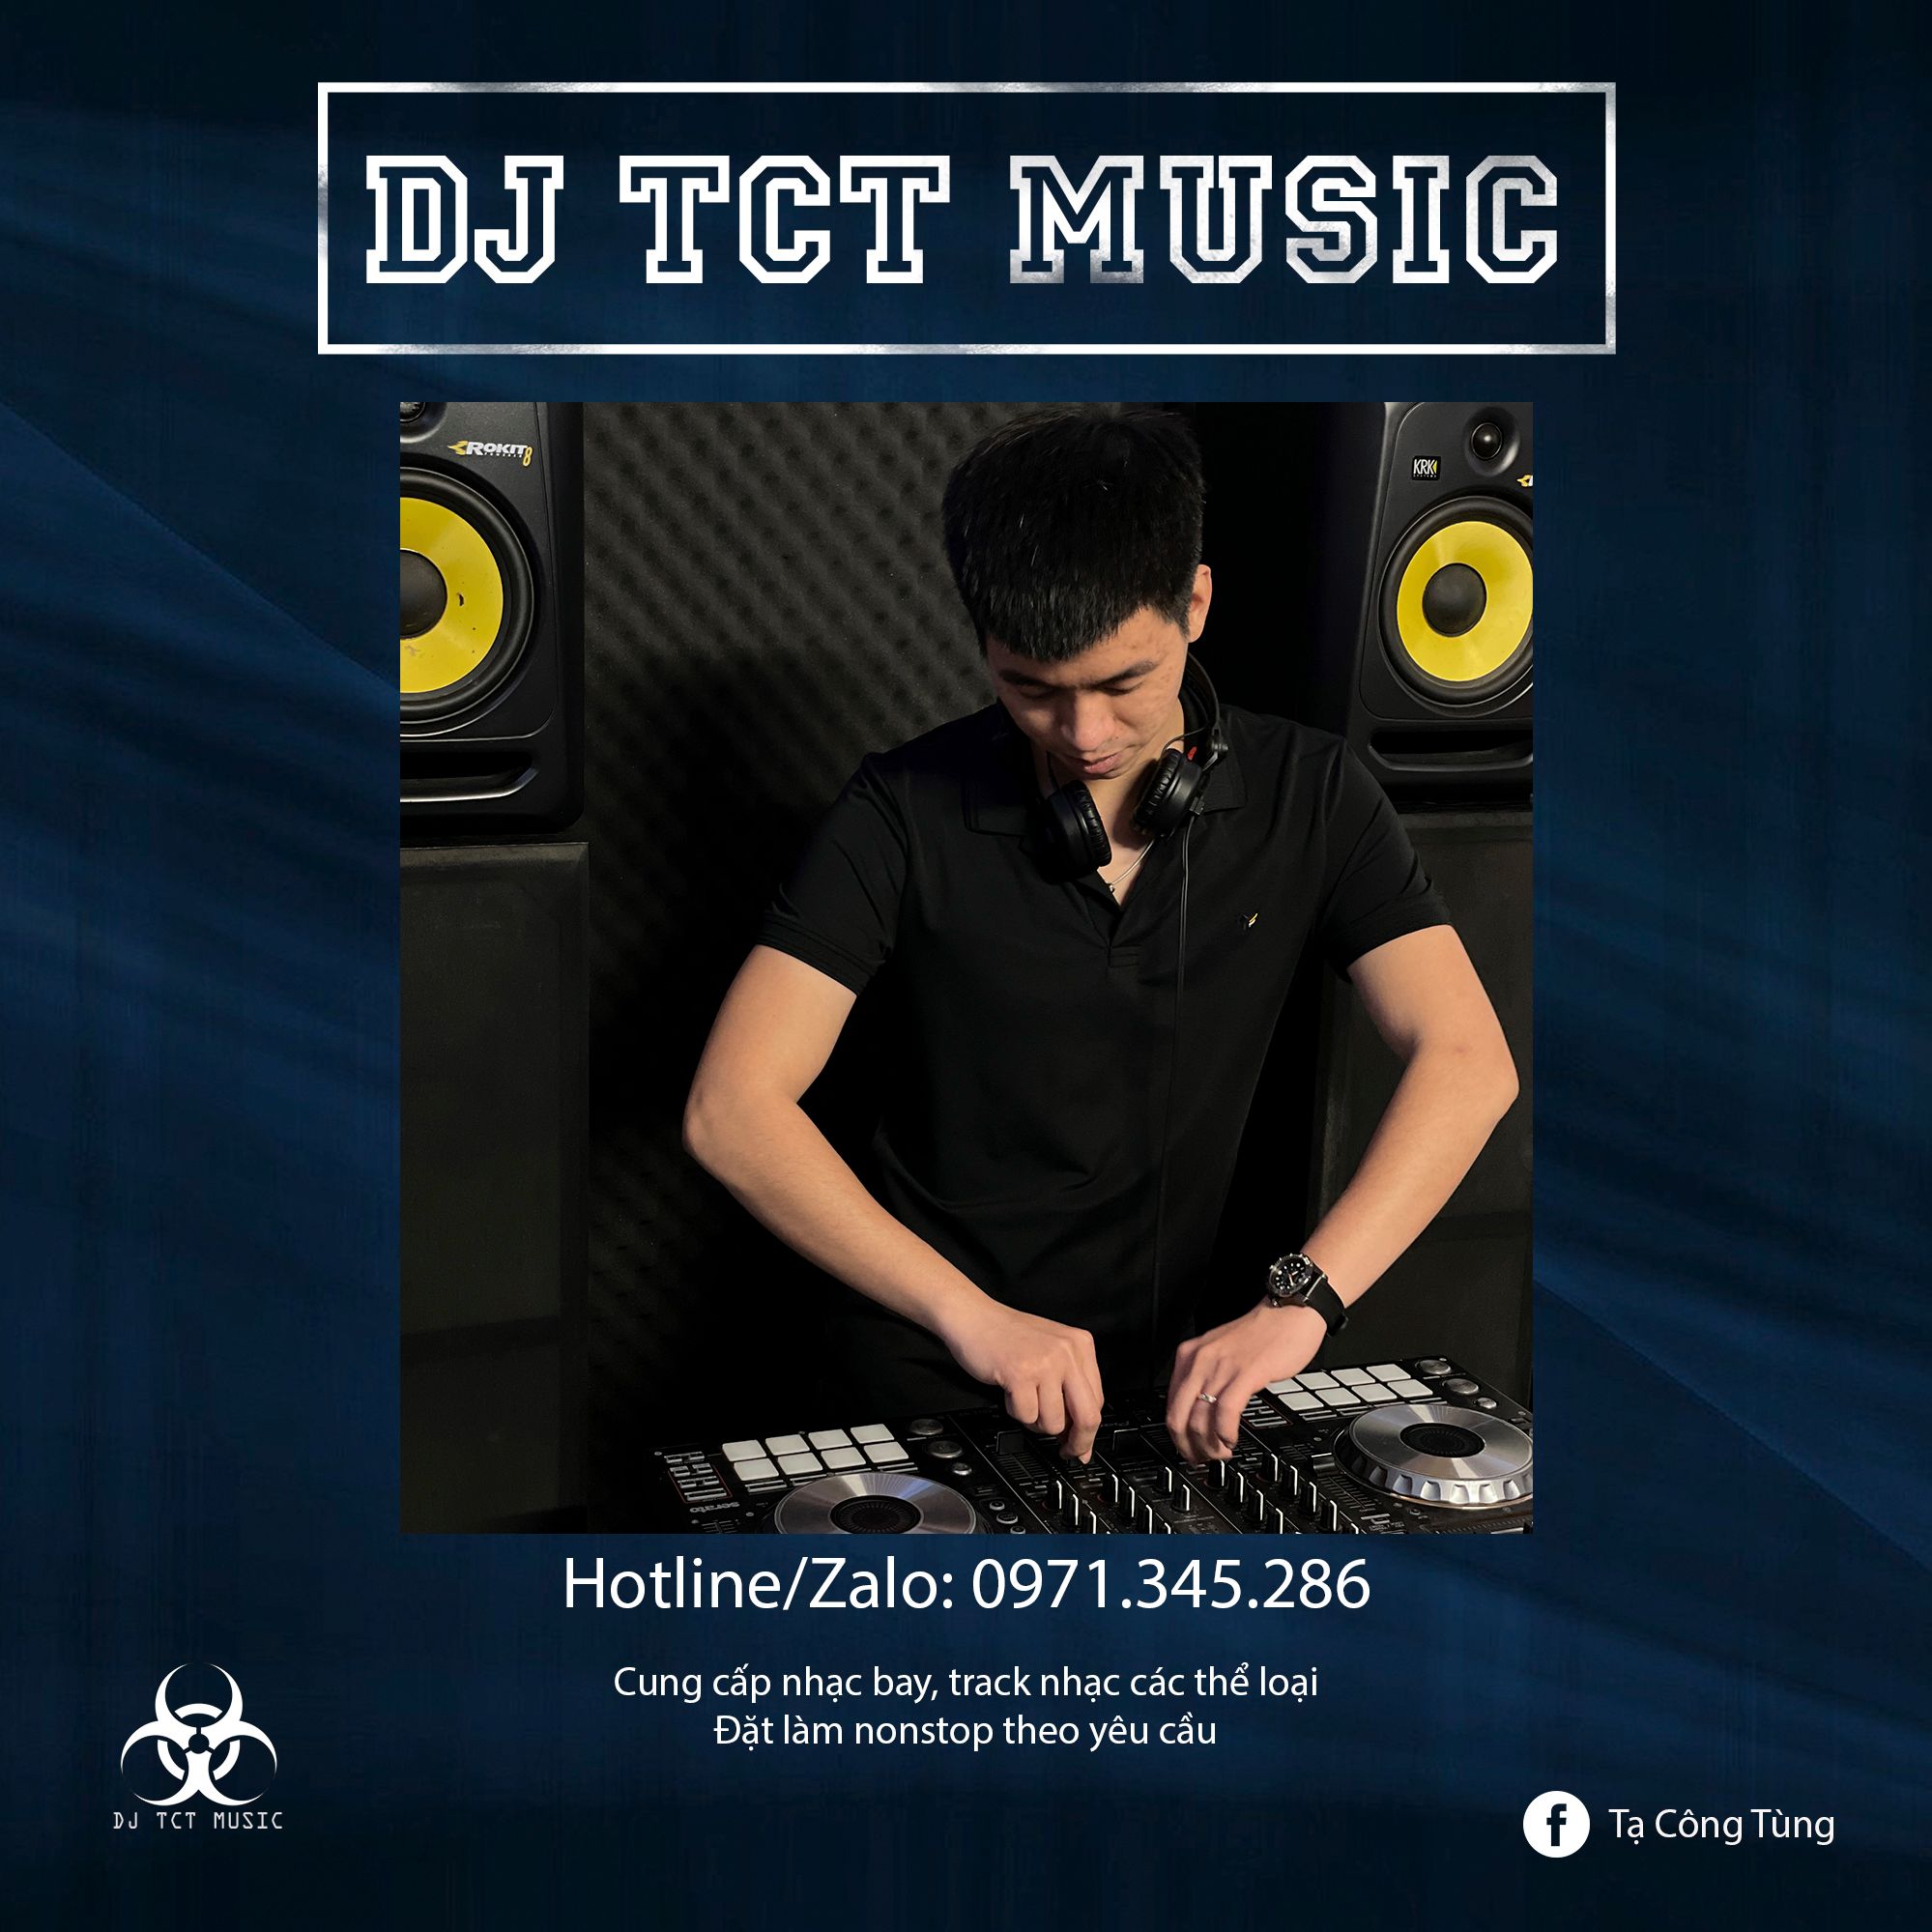 Ladata HÀNG TRÔI KE 2022 _ DJ TCT MUSIC 0971345286 _ NONSTOP BAY PHÒNG GIỌT NƯỚC CHẢY DỊU ÊM